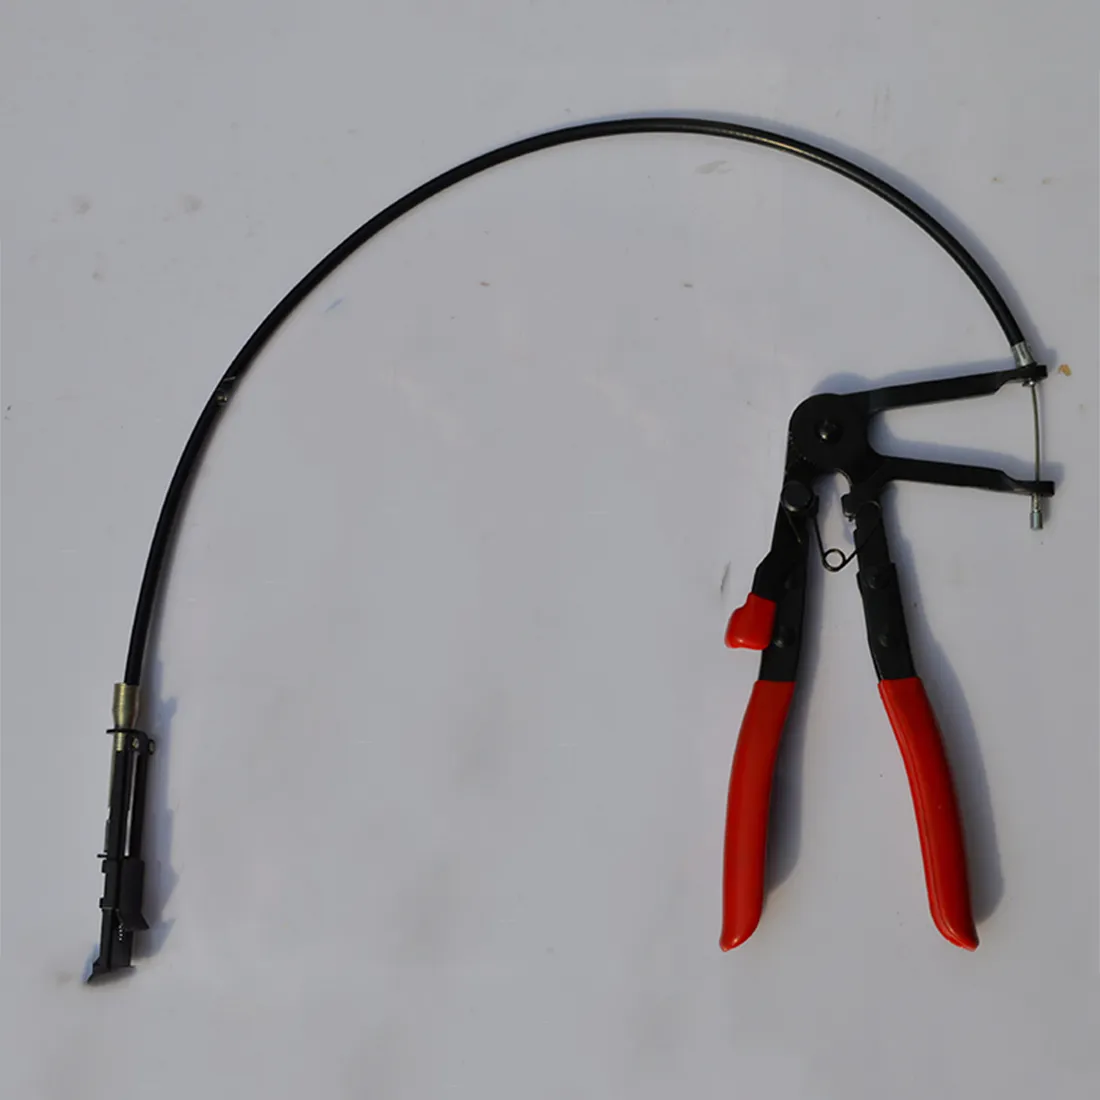 Hot outils de véhicules automobiles Type de câble fil flexible longue portée pince de serrage pour les réparations de voiture outil de retrait de collier de serrage Y200321